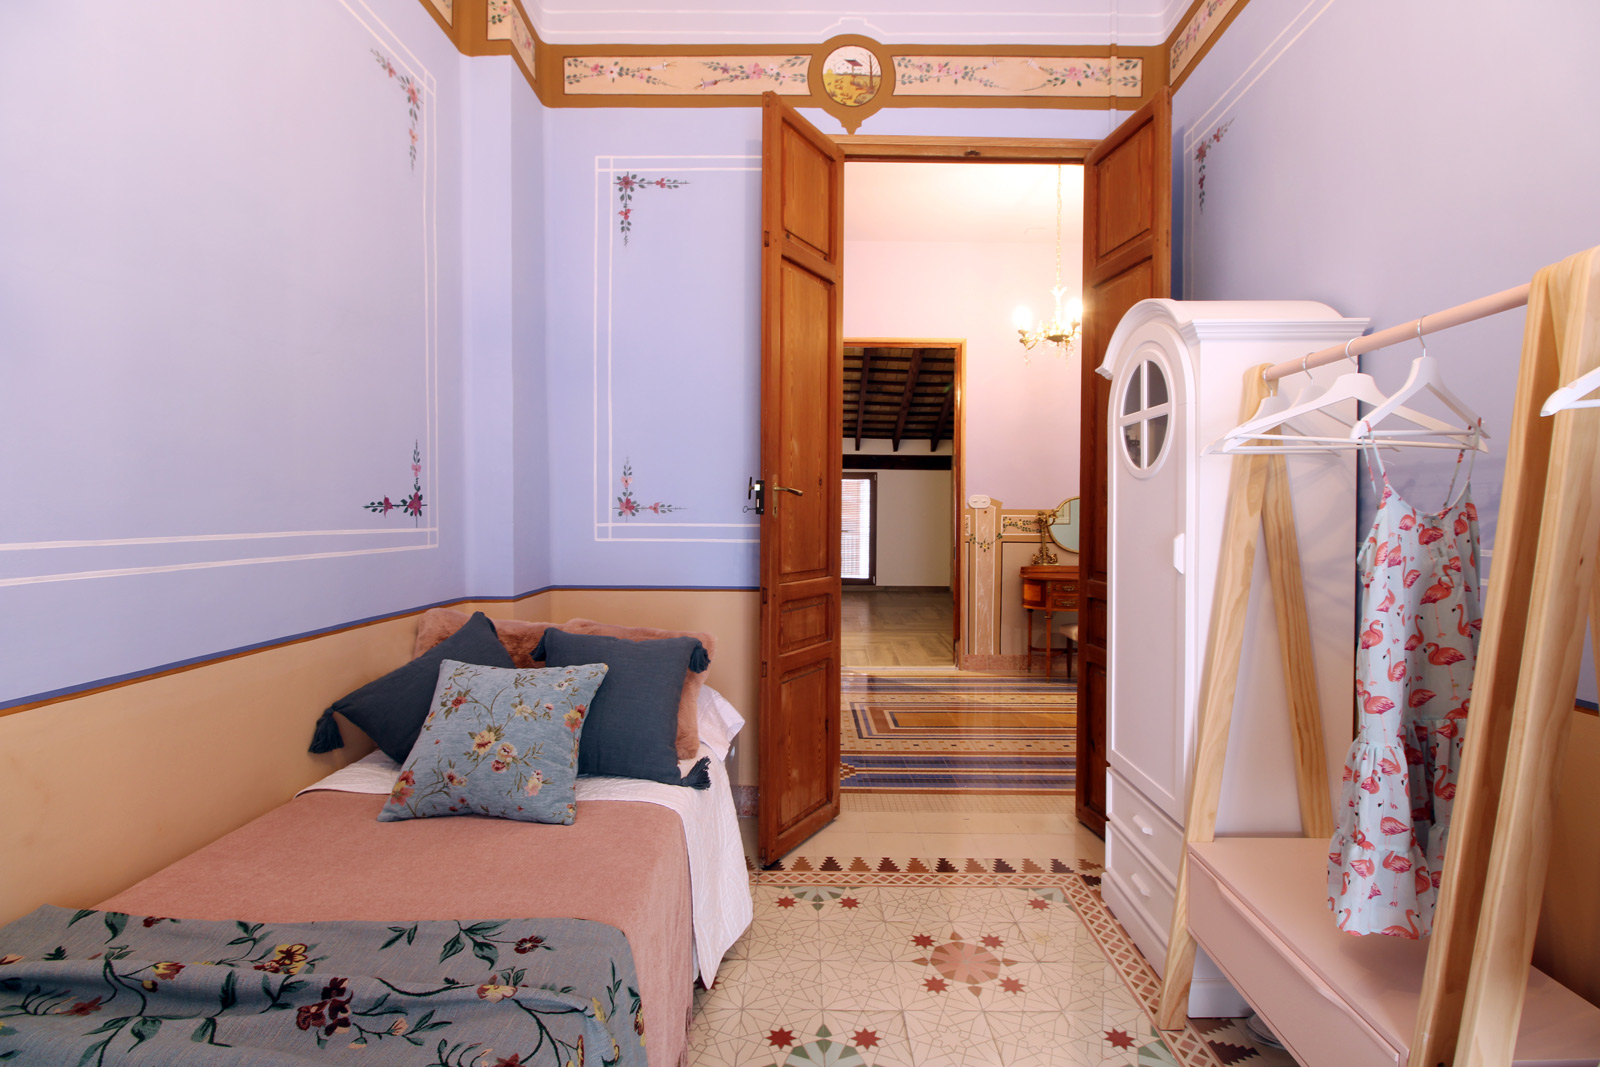 Dormitorio individual con caballete con ropa y armario